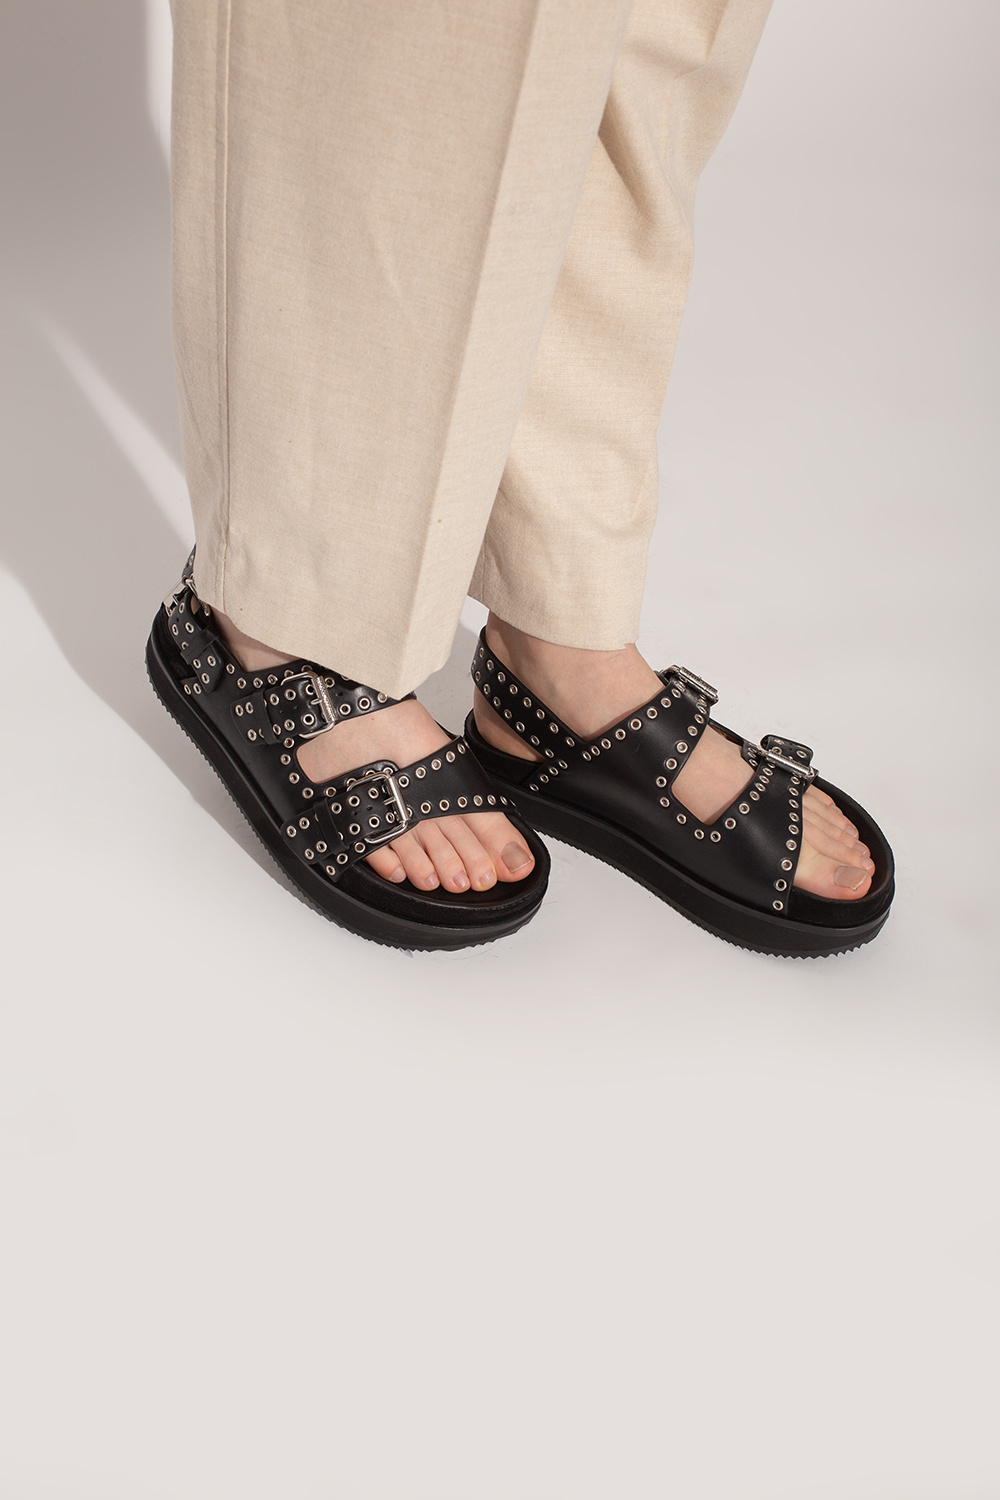 Isabel Marant ‘Ophie’ platform sandals